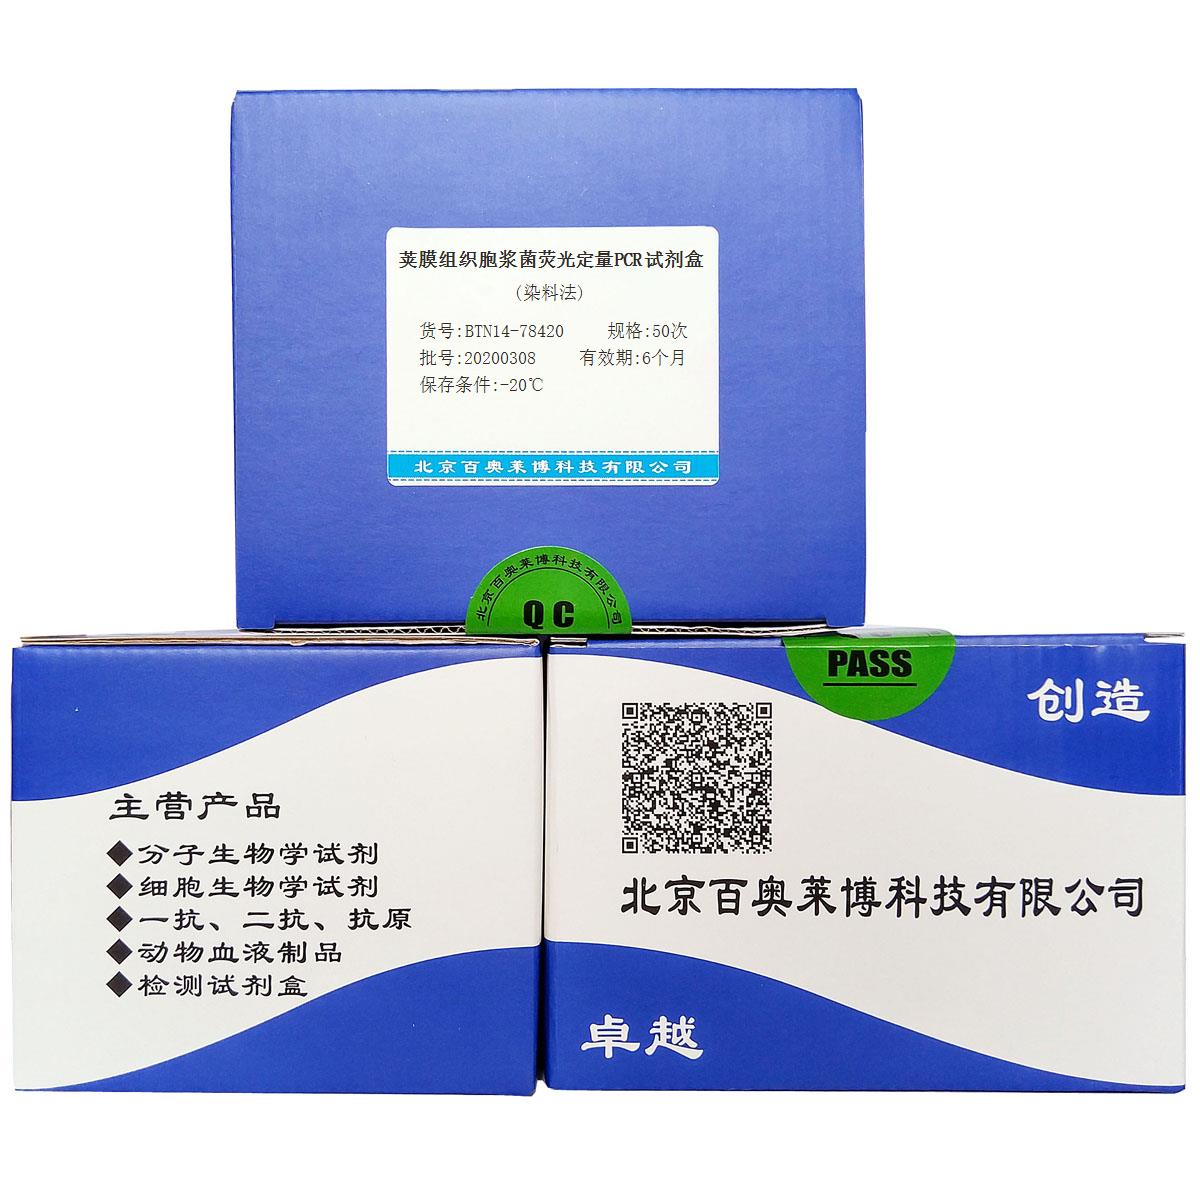 荚膜组织胞浆菌荧光定量PCR试剂盒(染料法)